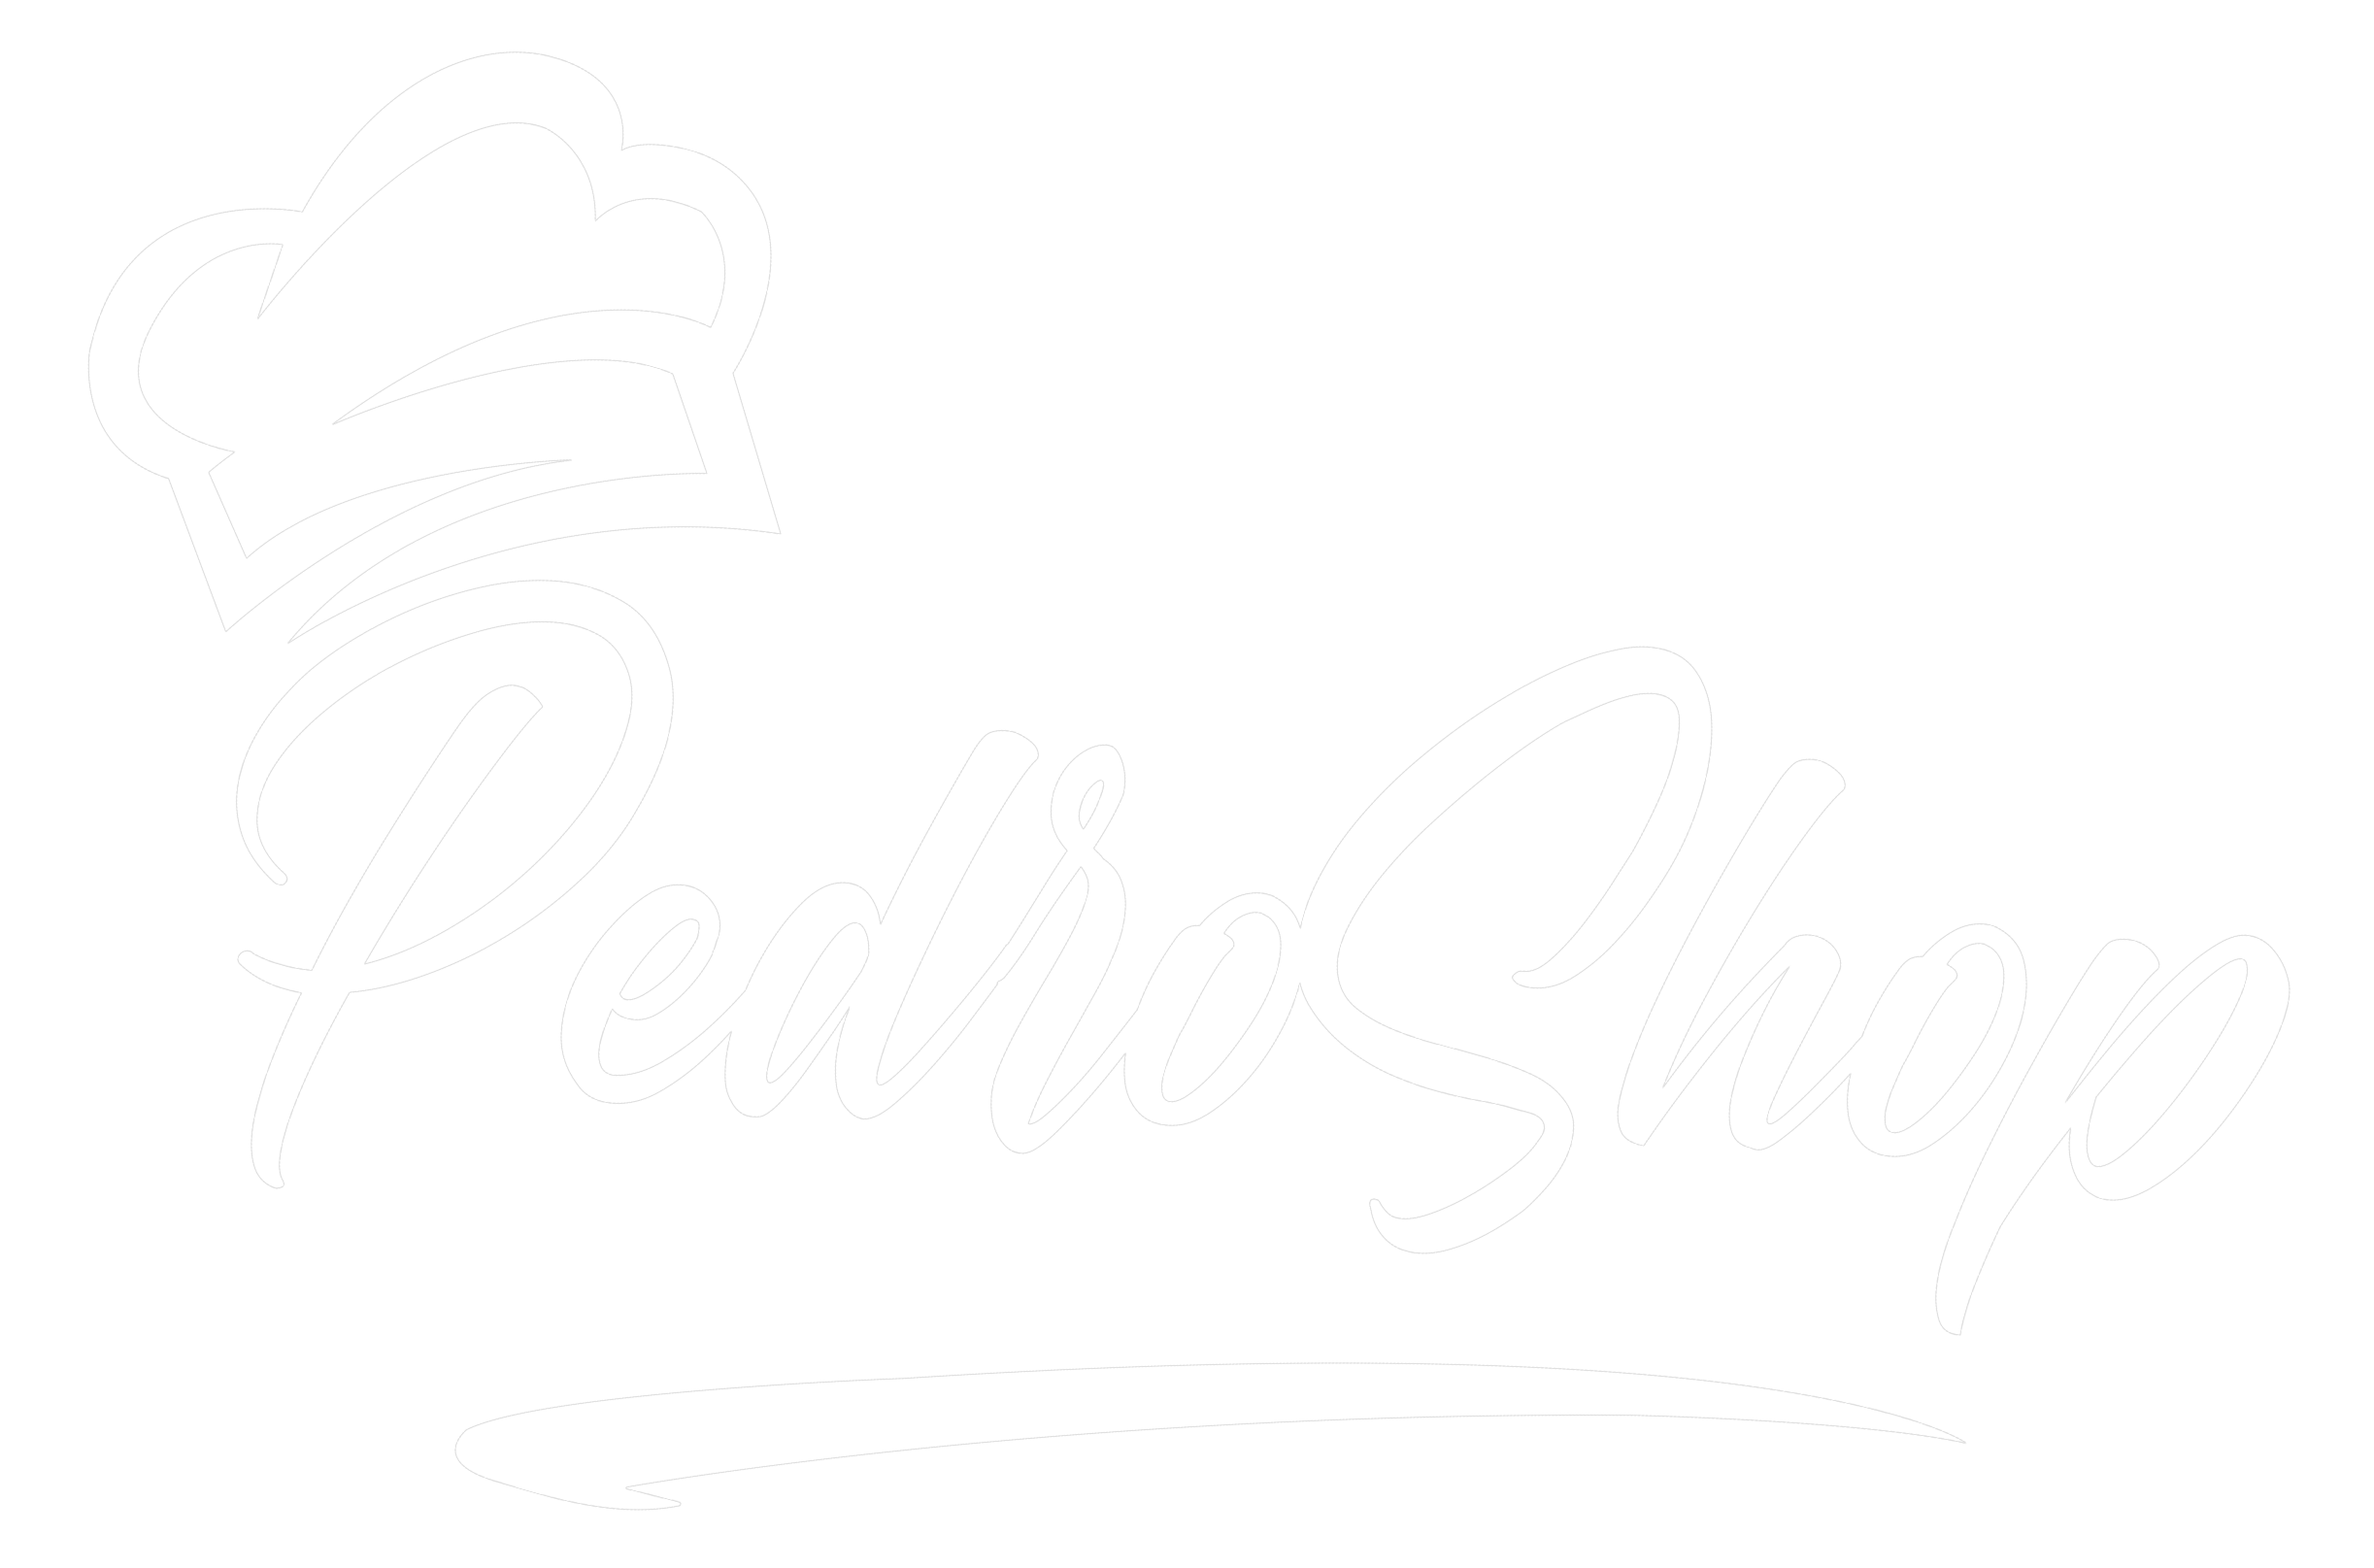 Panno Lampoasciuga – Pedro Shop - Tutto quello che ti serve!